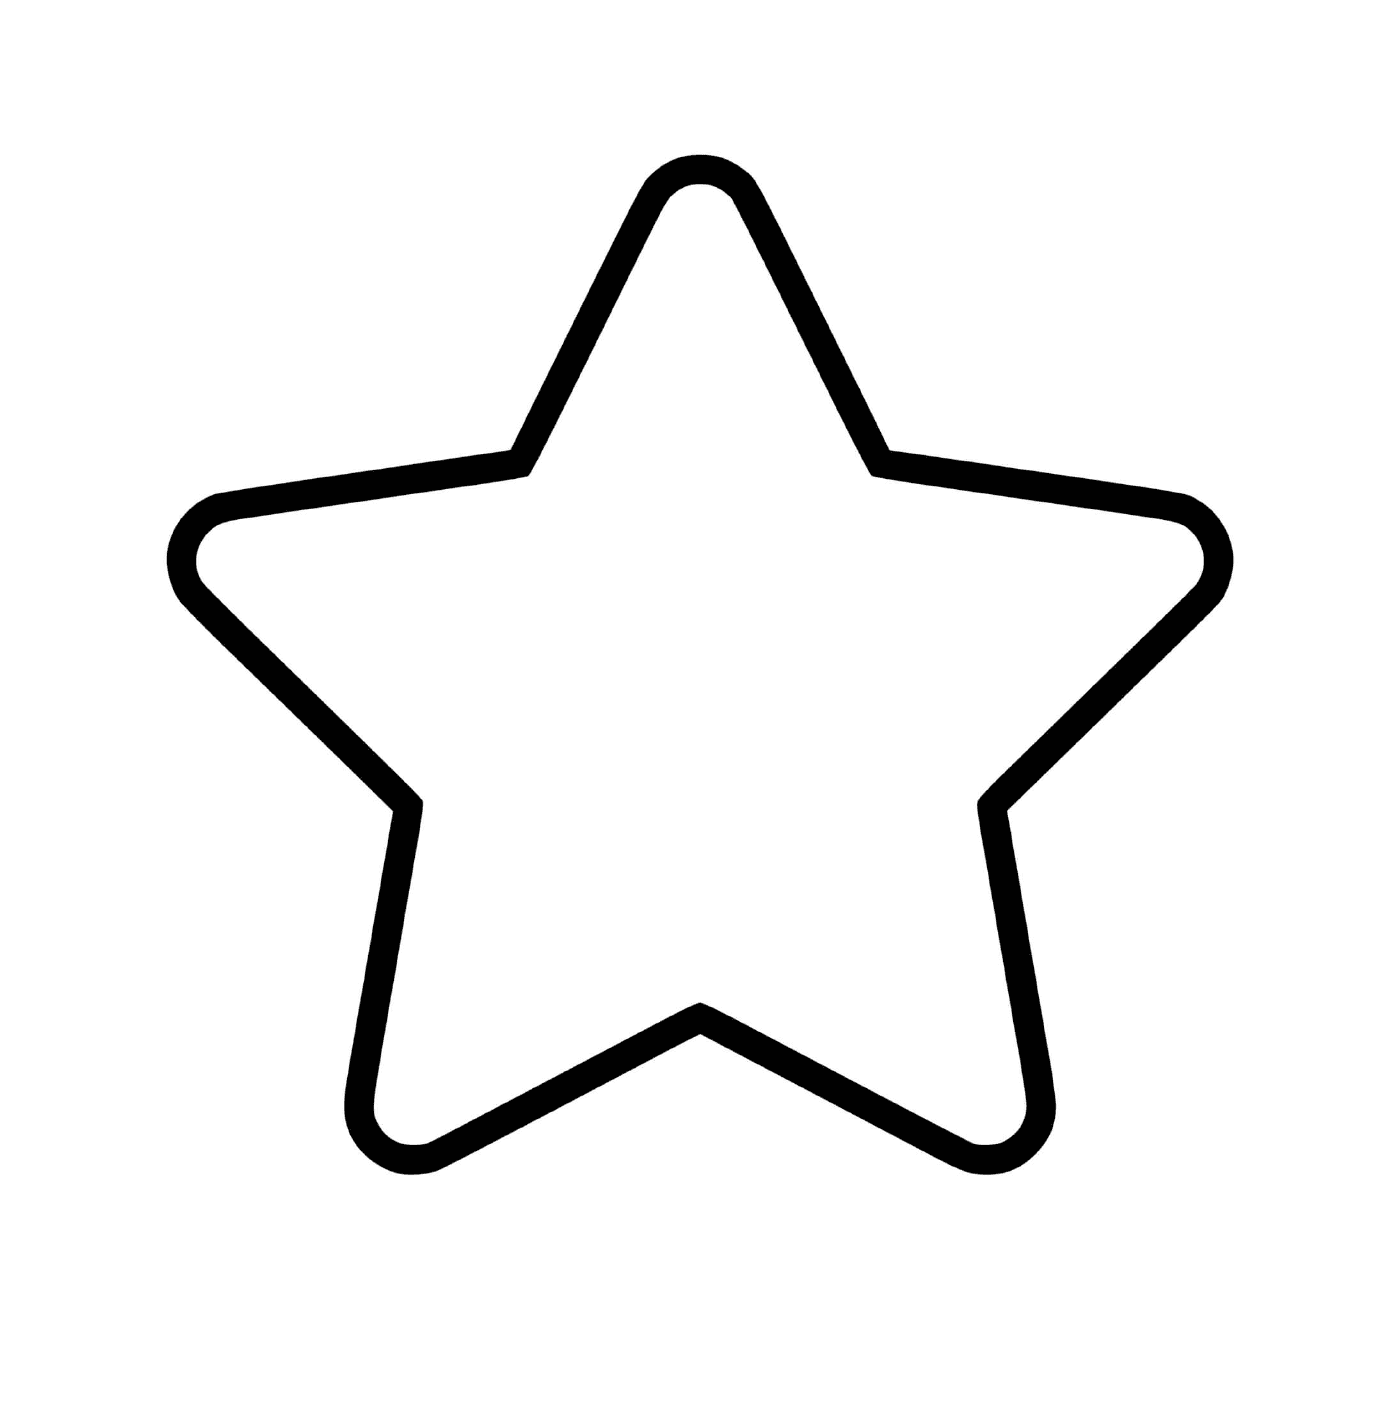  Una stella facile da disegnare 